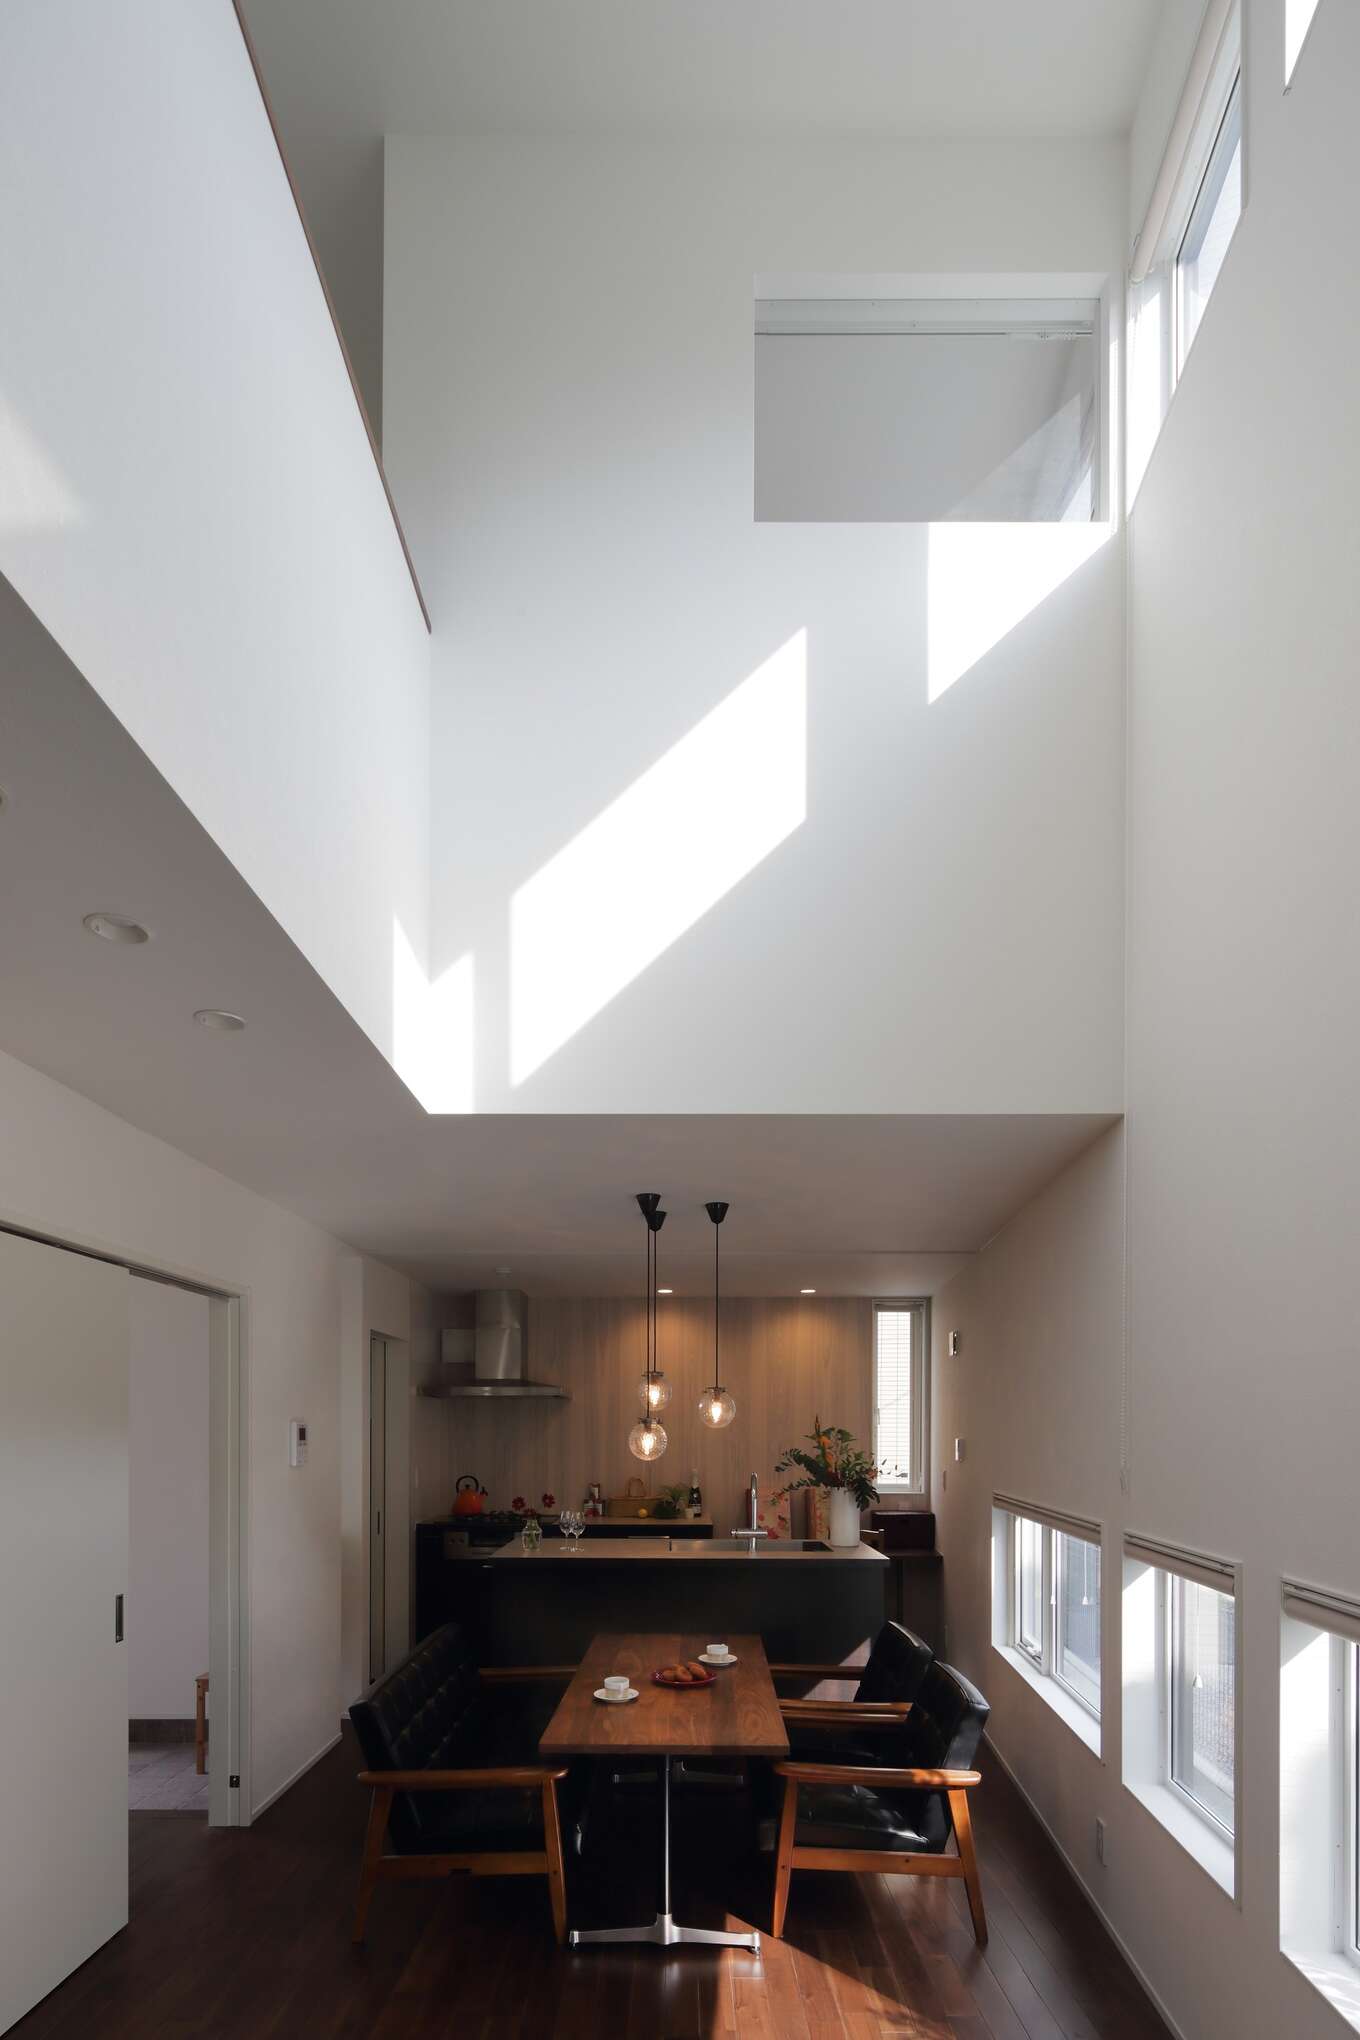 高窓から差し込む光が白壁を反射させて部屋全体を明るくしている。